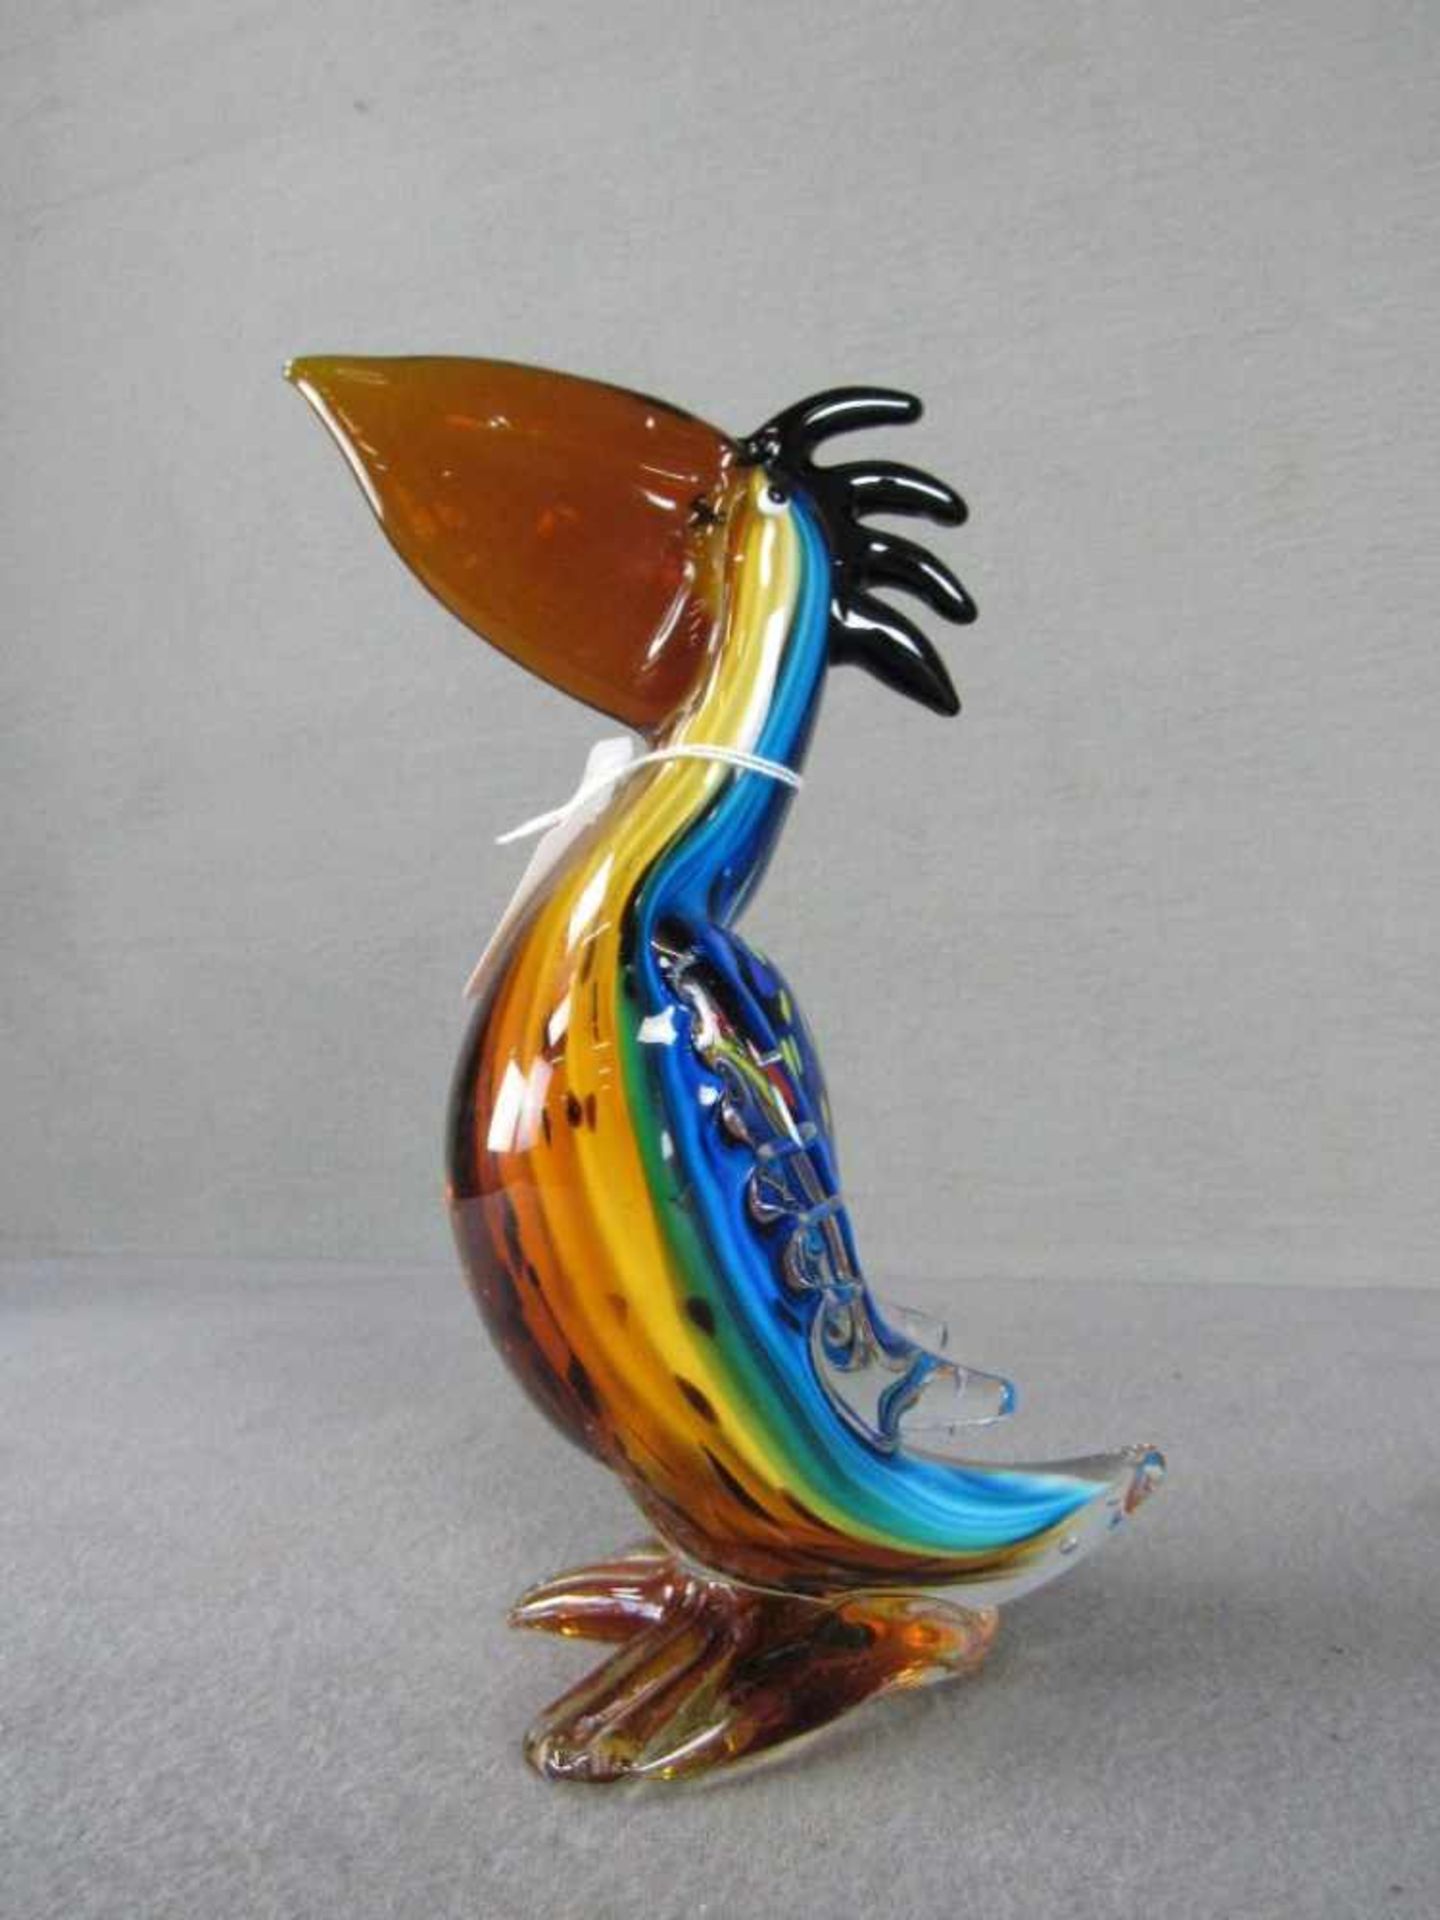 Glasskulptur farbenfroh Pelikan evtl Murano 25,5 cm hoch - Bild 5 aus 5